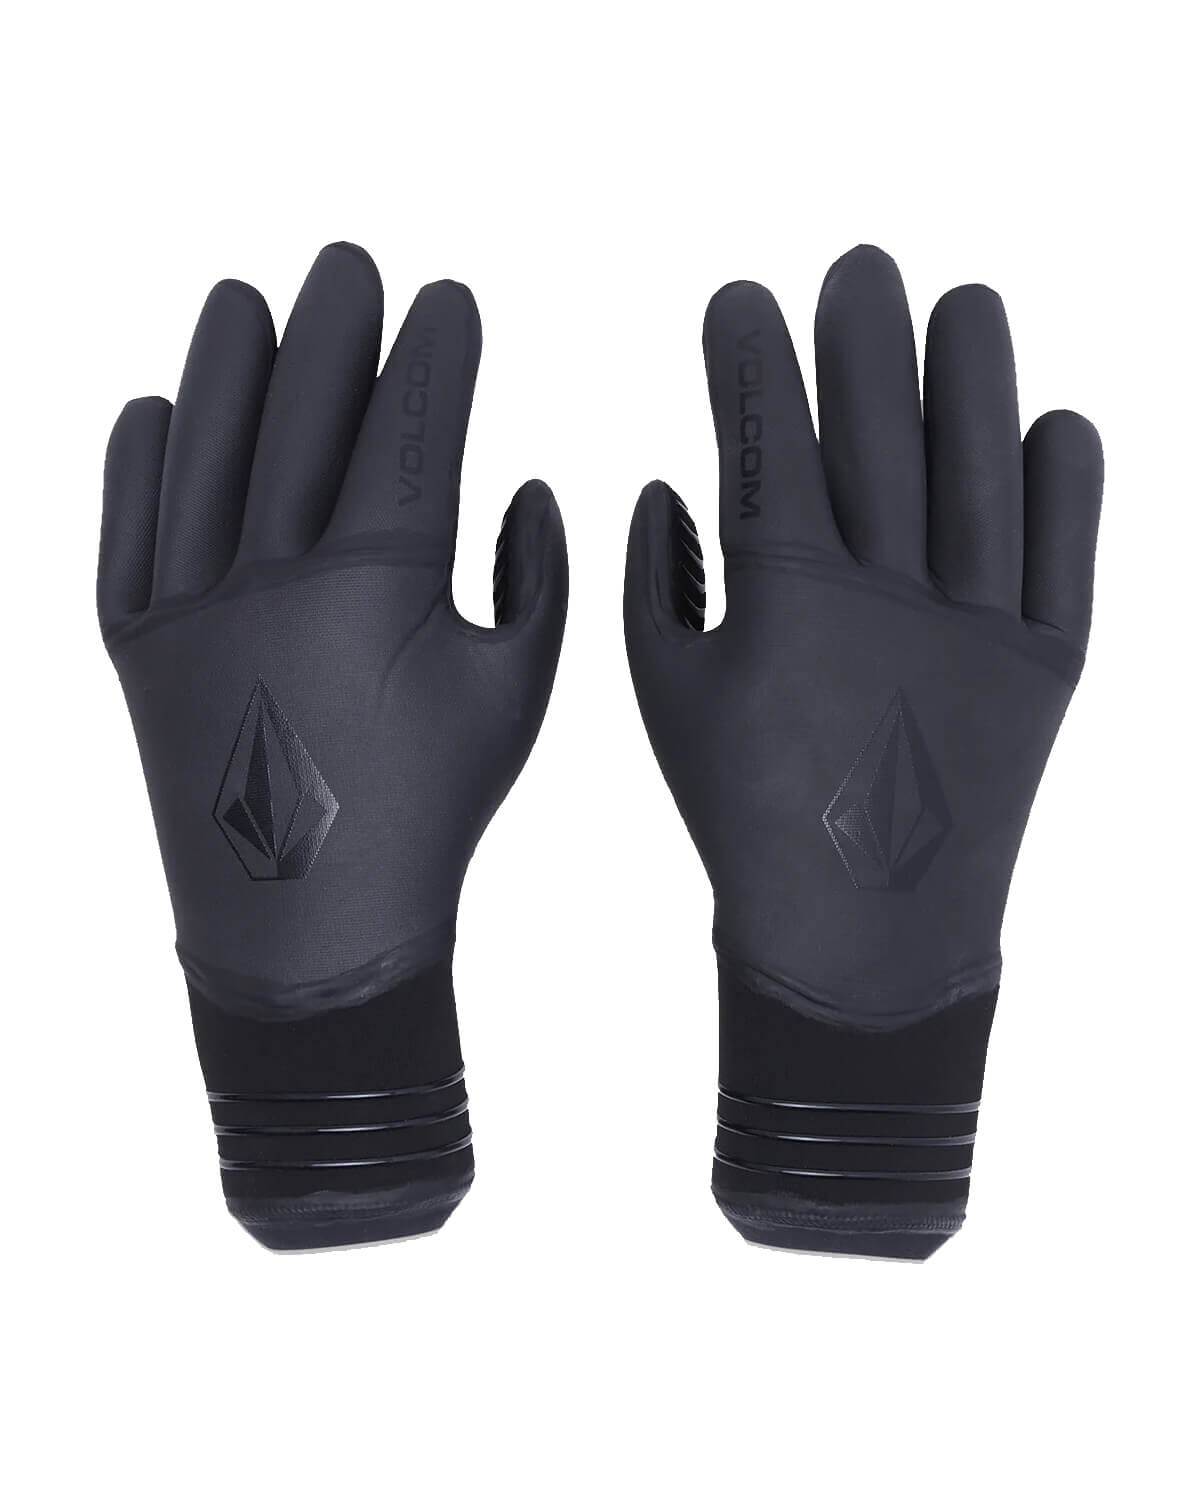 Volcom 3mm 5 Finger Gloves, L / Black